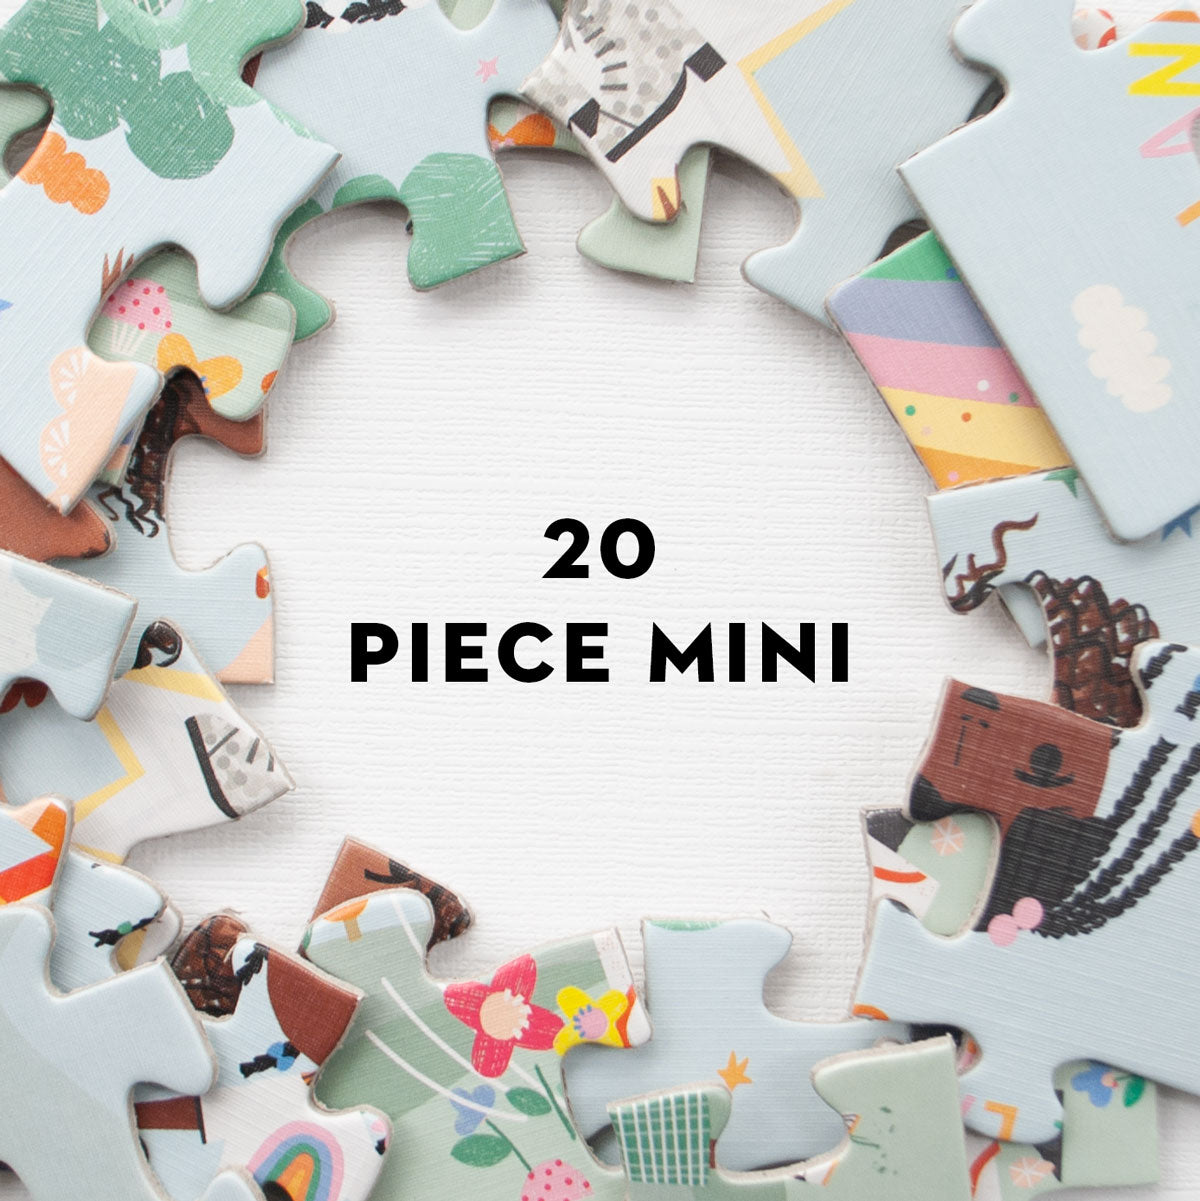 20 Piece Minis